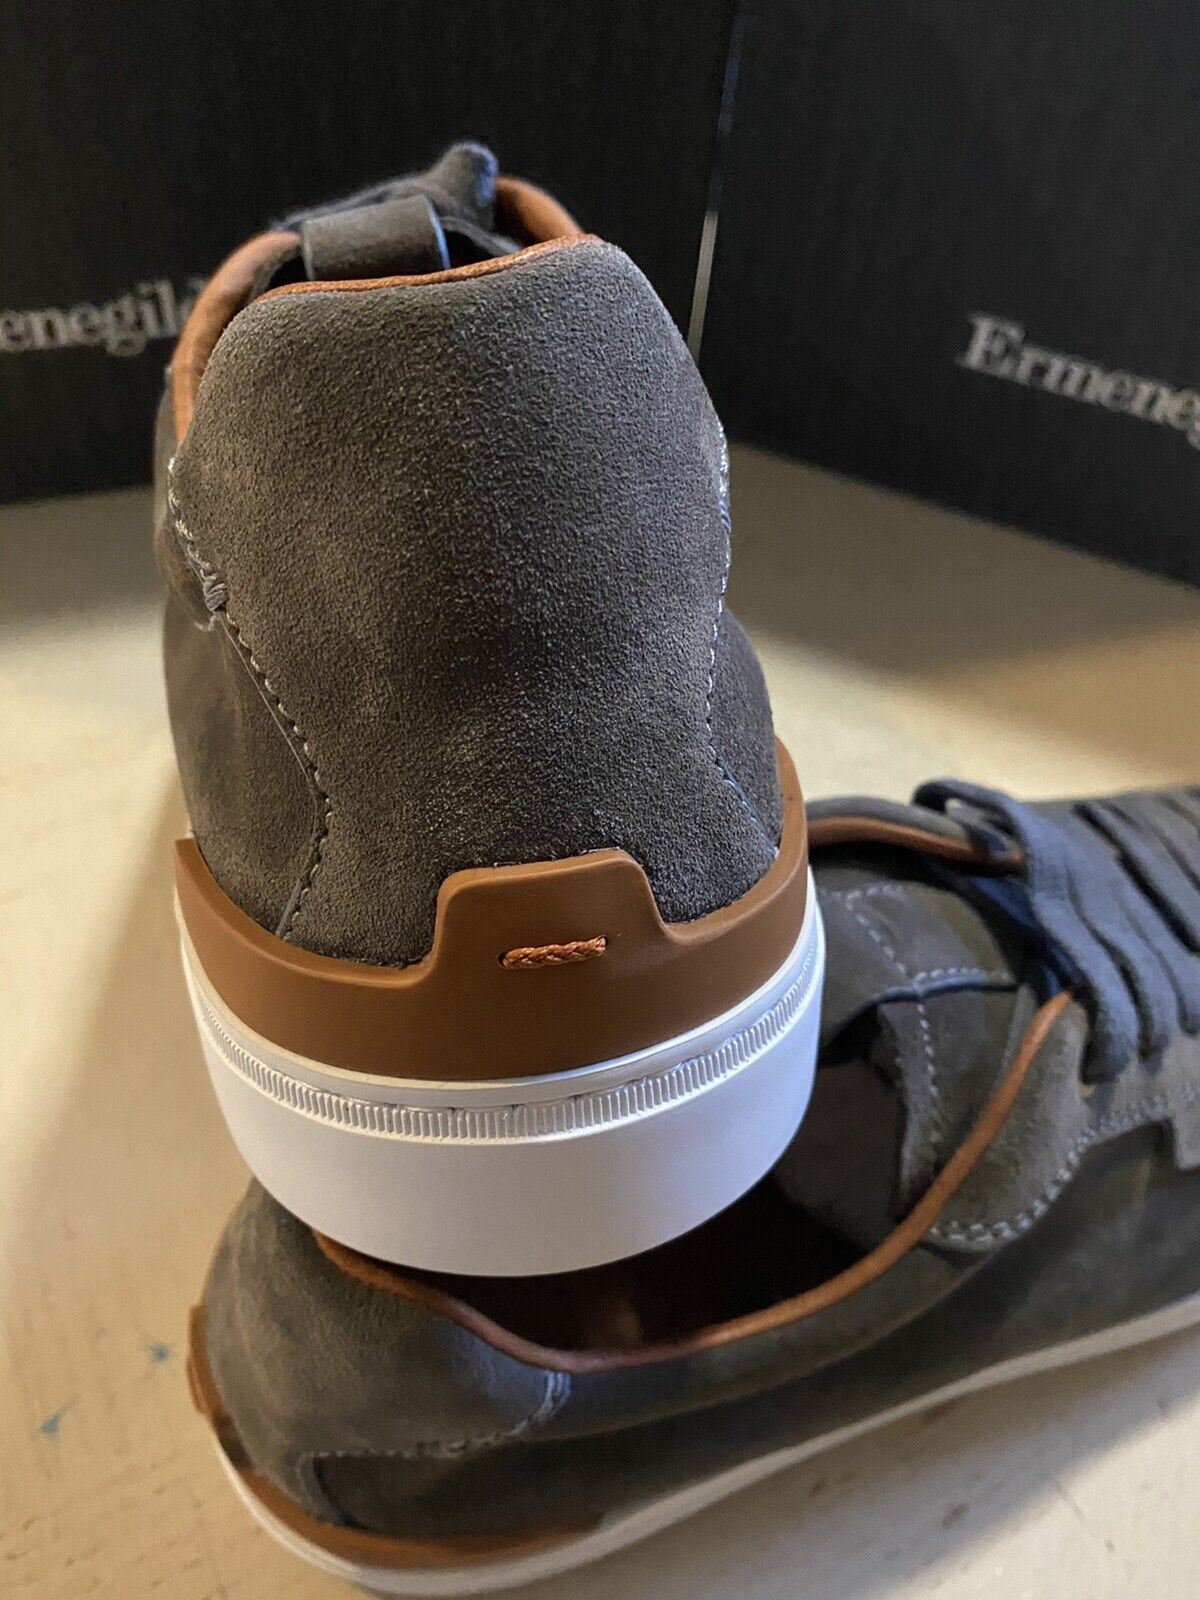 Neue 495 $ Ermenegildo Zegna Wildleder-Sneakers Schuhe DK Grau 12 US Italien